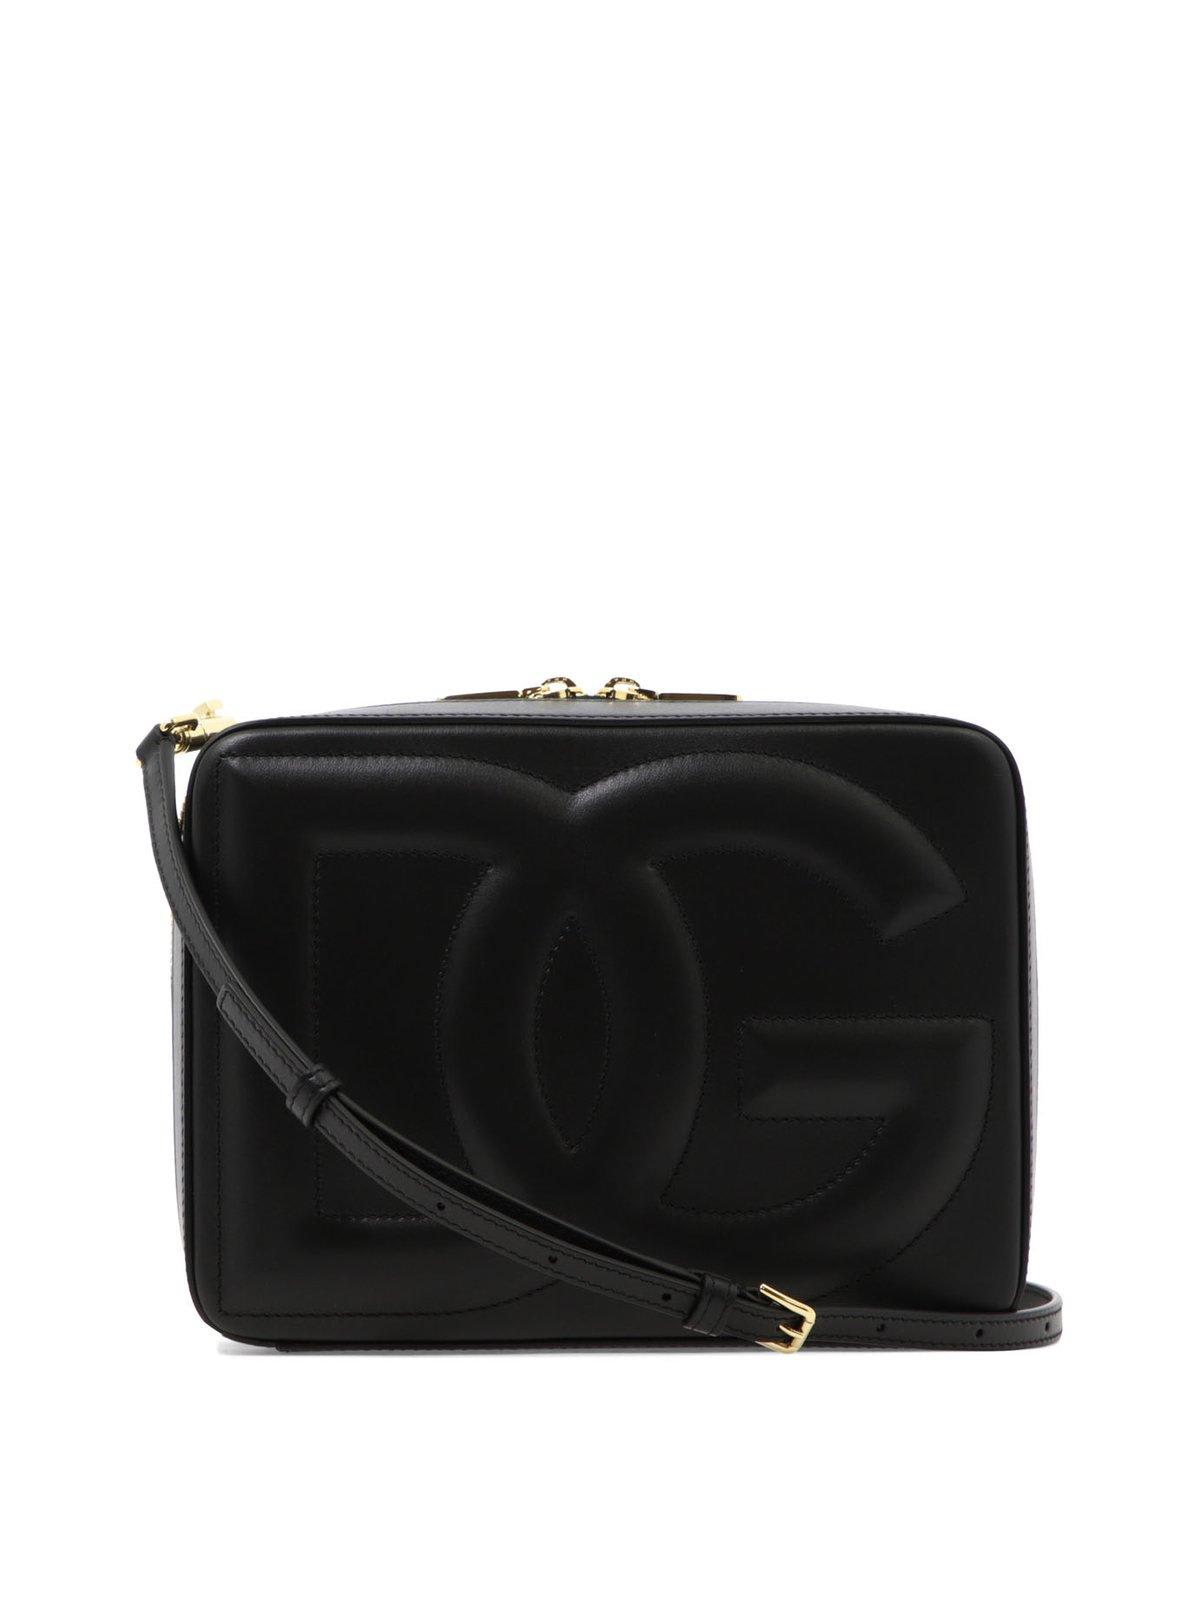 Dolce & Gabbana Medium Calfskin Logo Camera Bag In Black